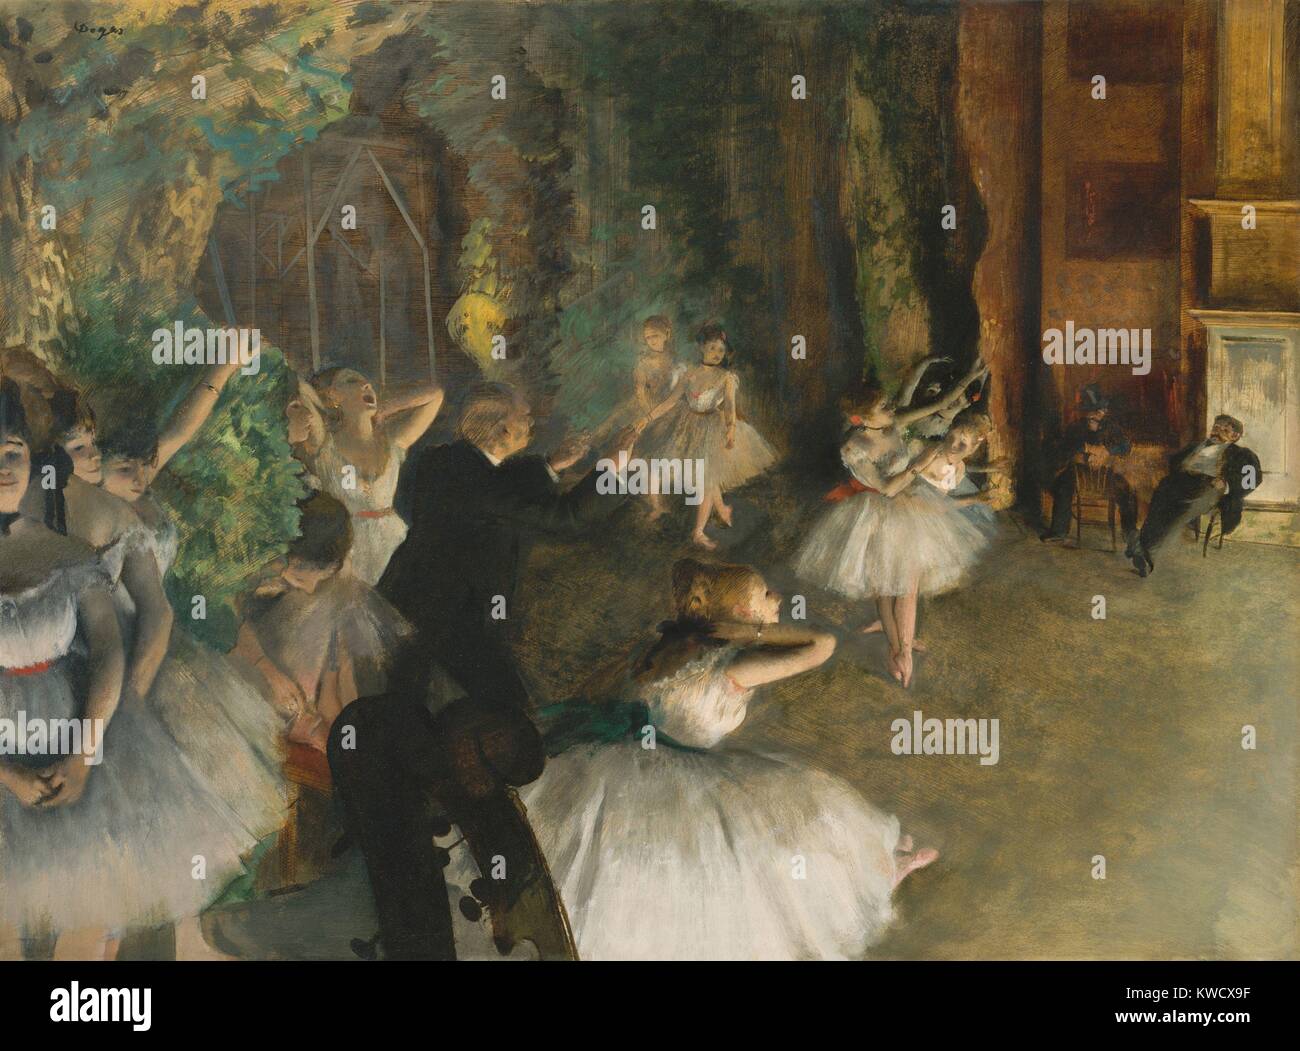 Le prove del balletto sul palco, di Edgar Degas, 1874, impressionista francese mixed media disegno. Ballerine stand in posture naturali, fuori campo mentre gli uomini osservare i ballerini sul palco. Ci sono divertenti ritagliato violino scorre in basso a sinistra (BSLOC_2017_3_103) Foto Stock